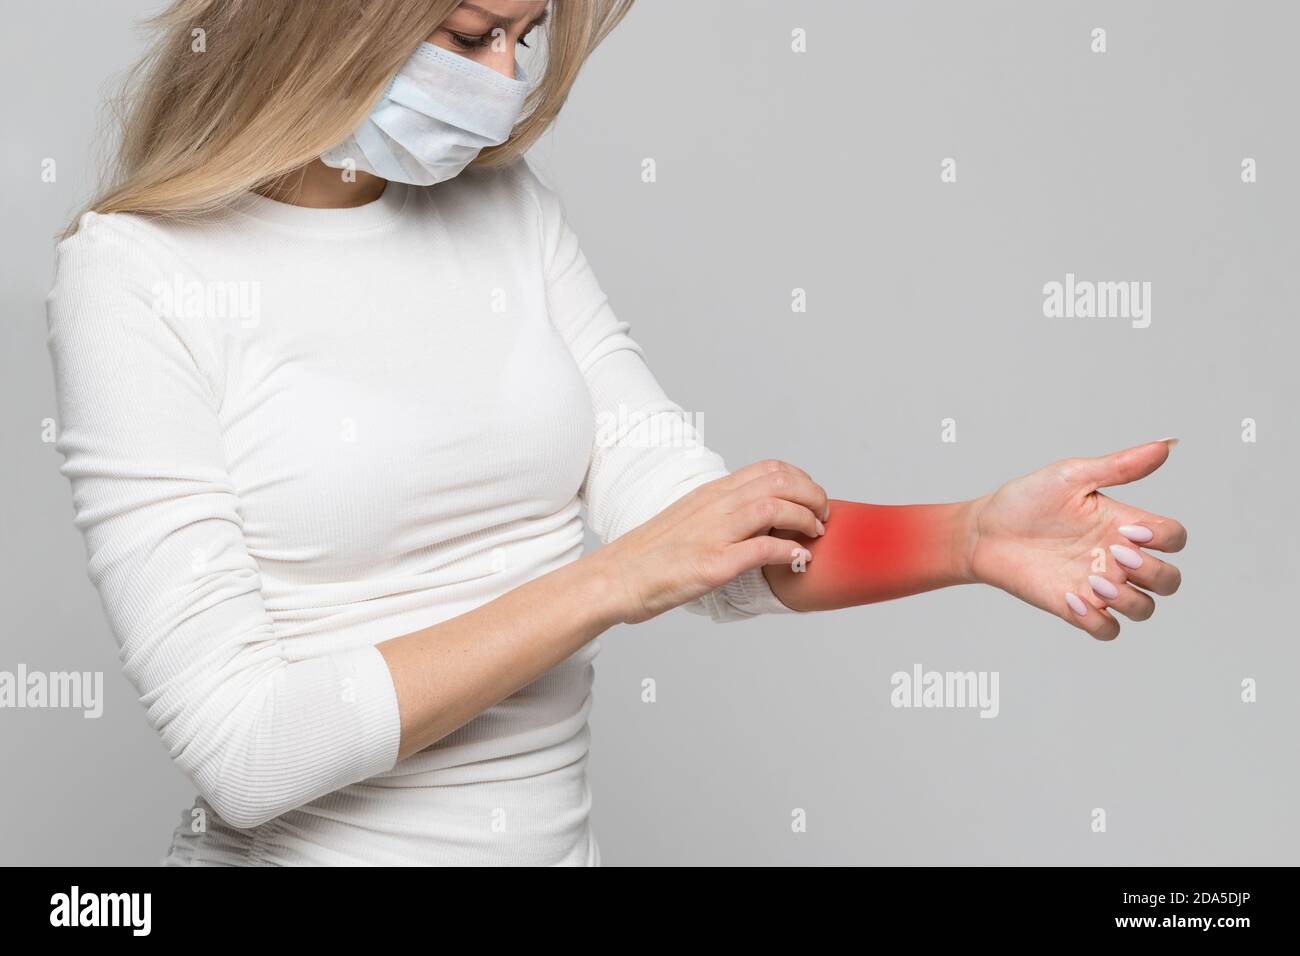 Studio Porträt der Frau in medizinischen Gesichtsmaske kratzenden Arm in rot, isoliert auf grauem Hintergrund. Symptome einer Tierallergie, juckende Haut Stockfoto